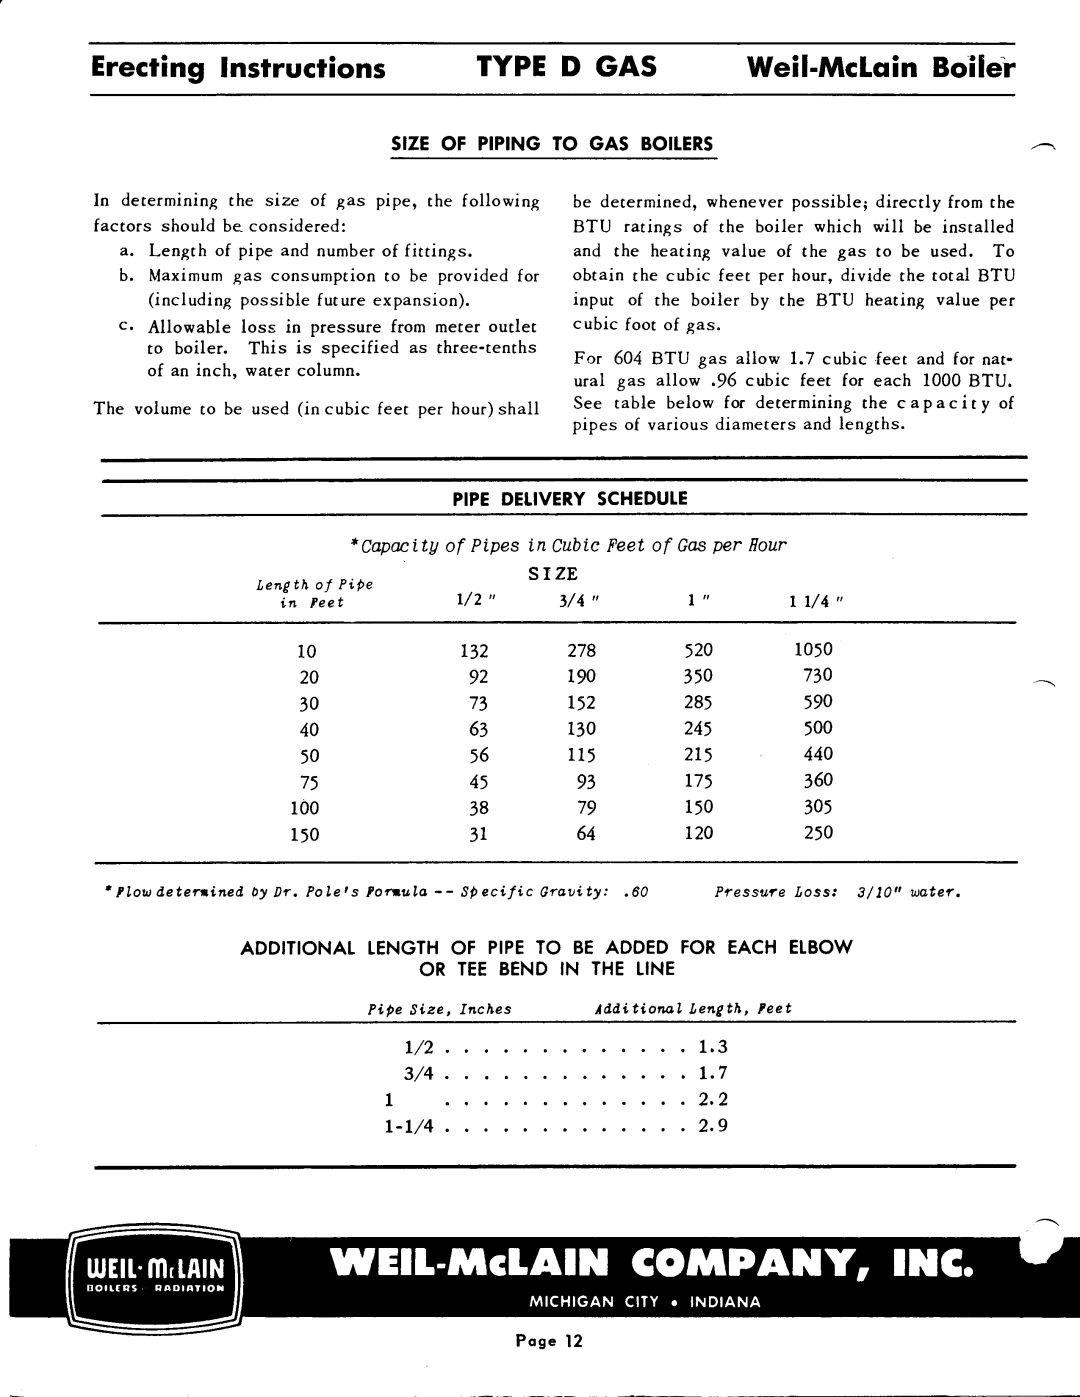 Weil-McLain D Gas Series 2 manual 